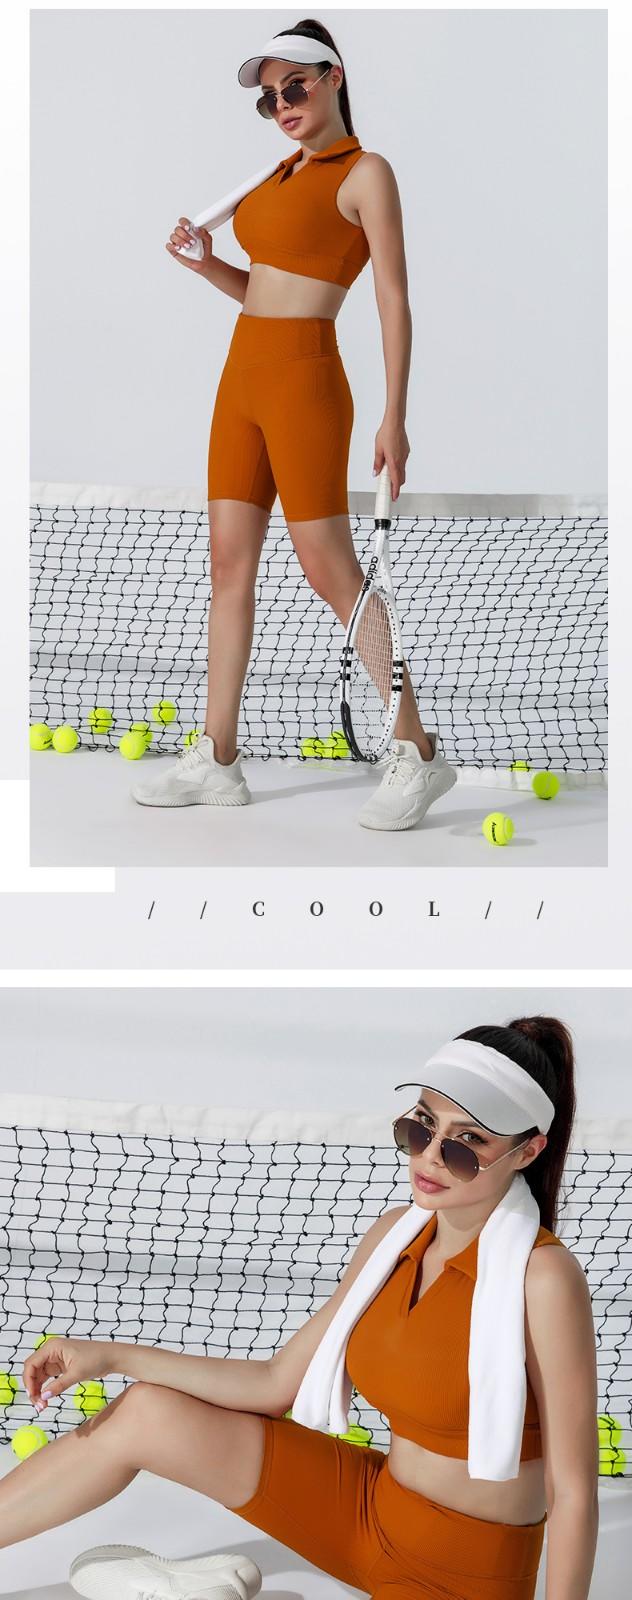 INGOR SPORTSWEAR woman tennis wear production